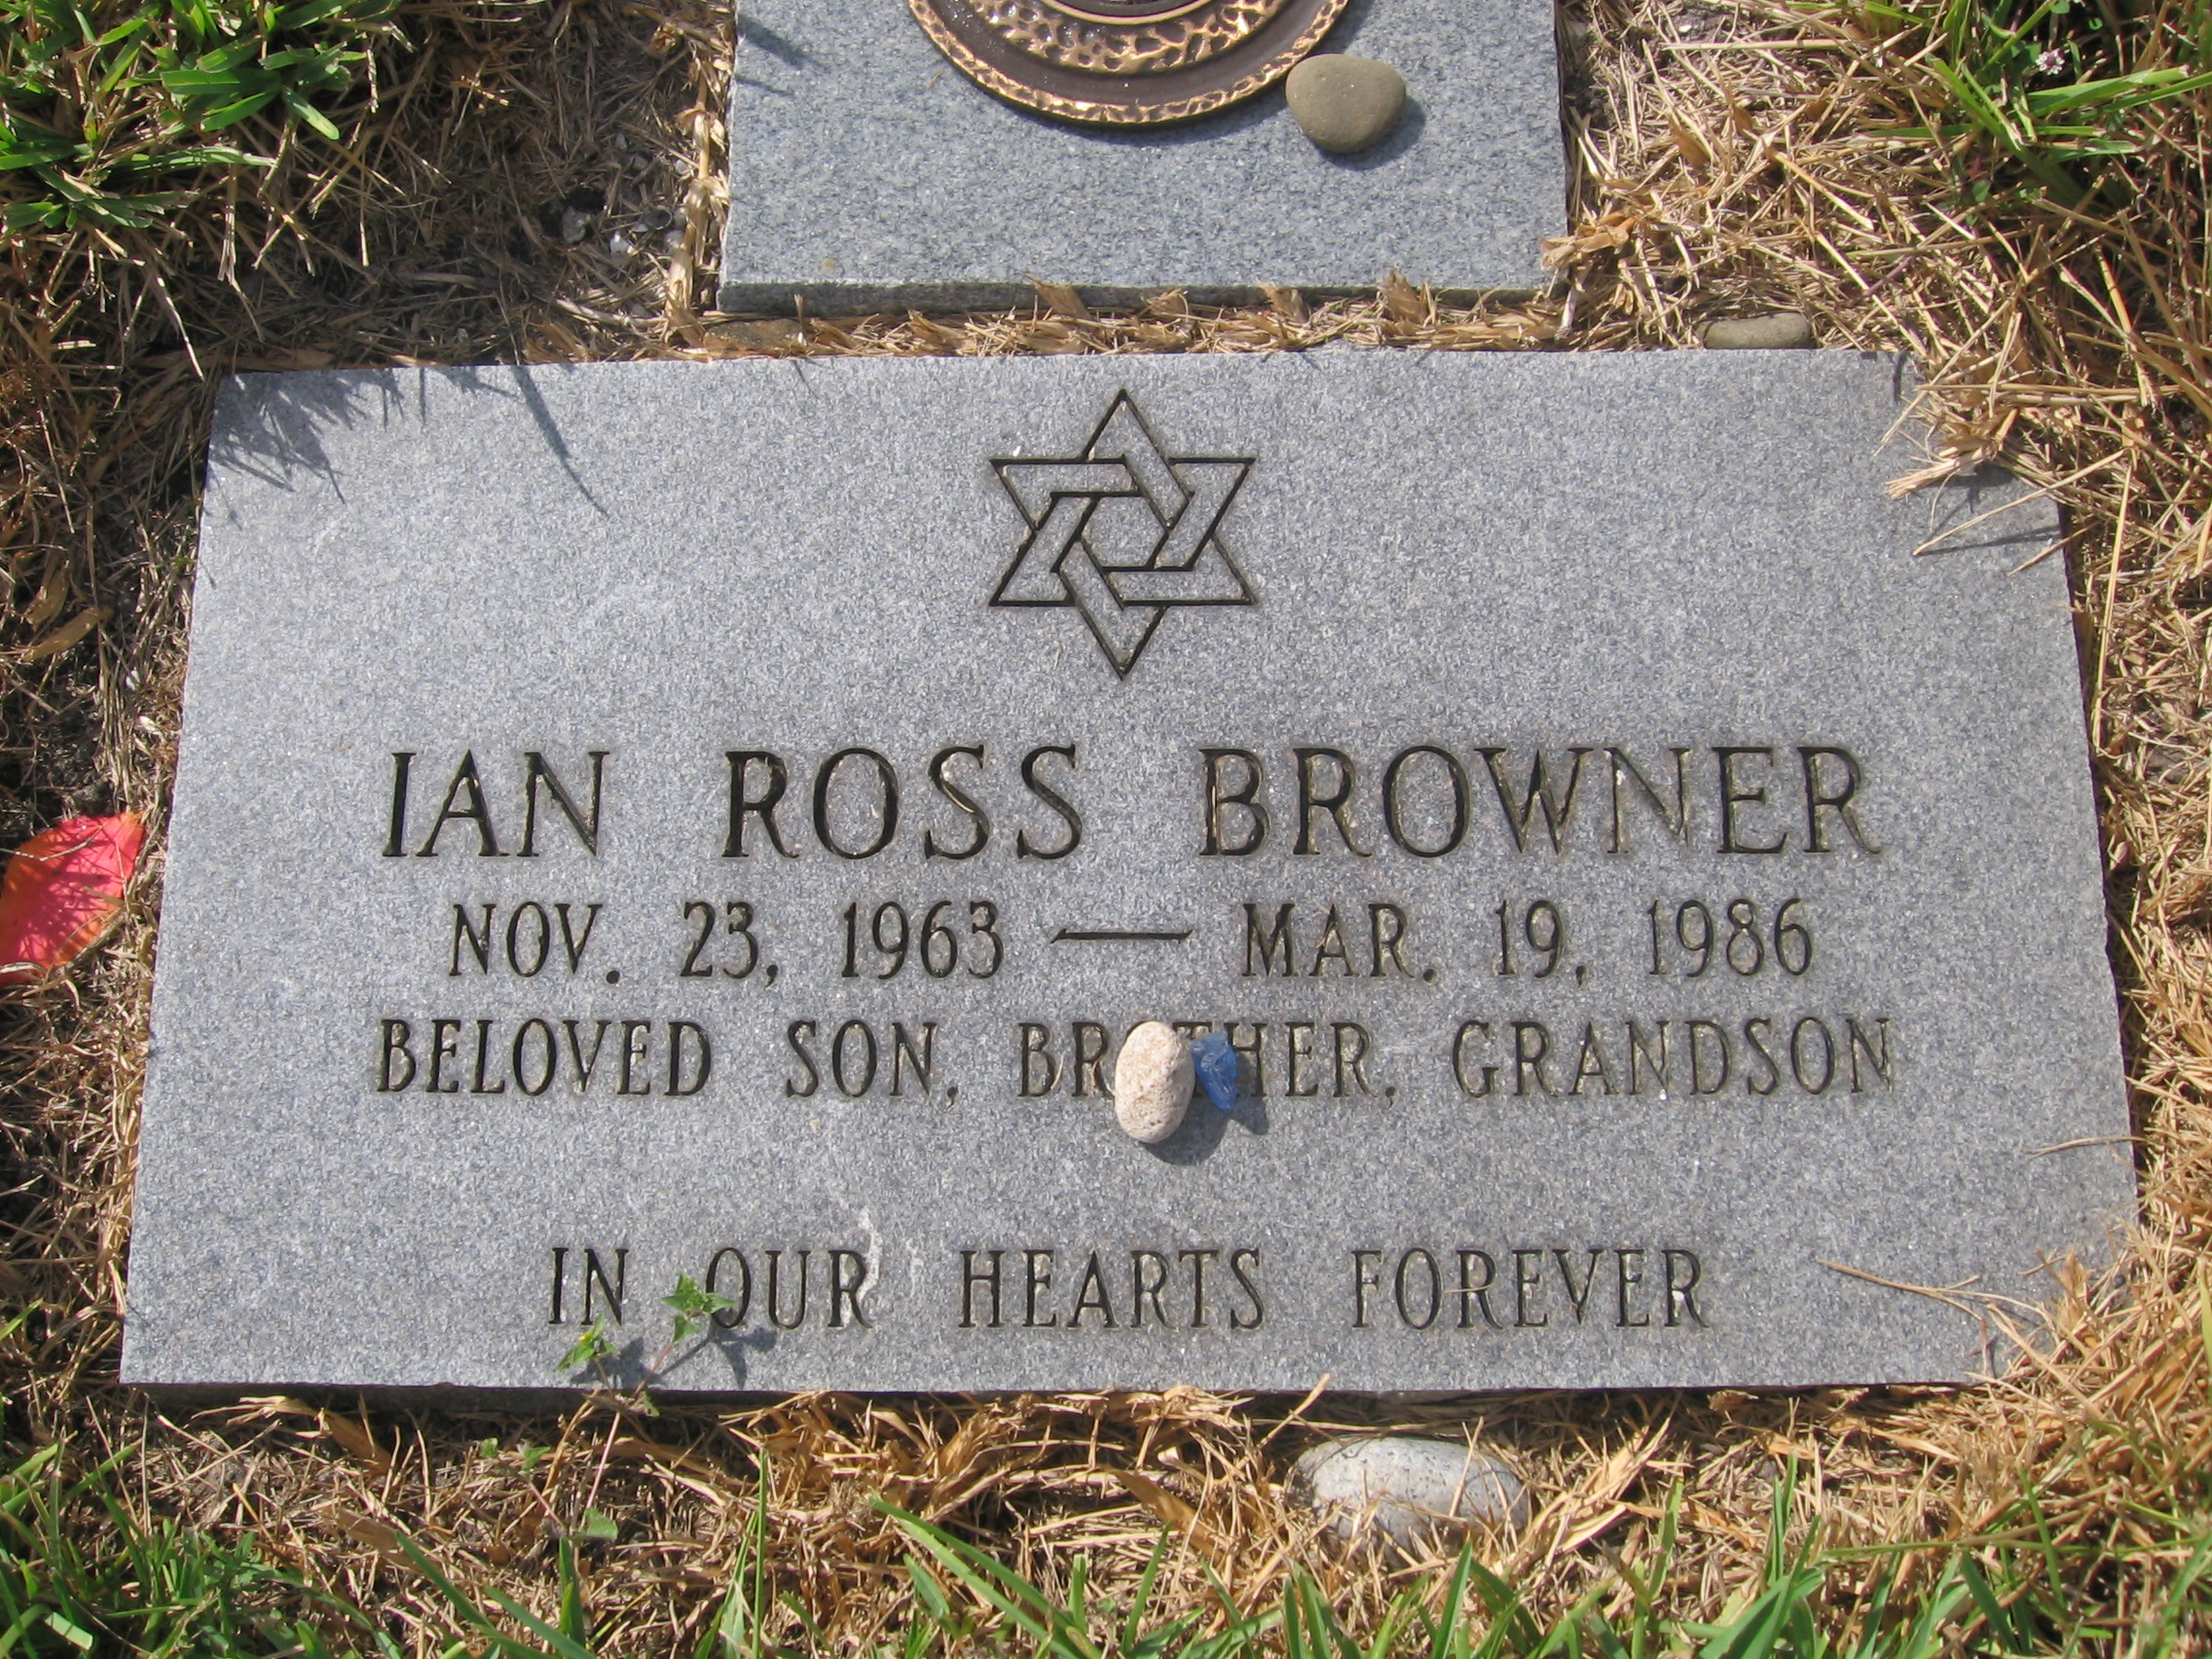 Ian Ross Browner